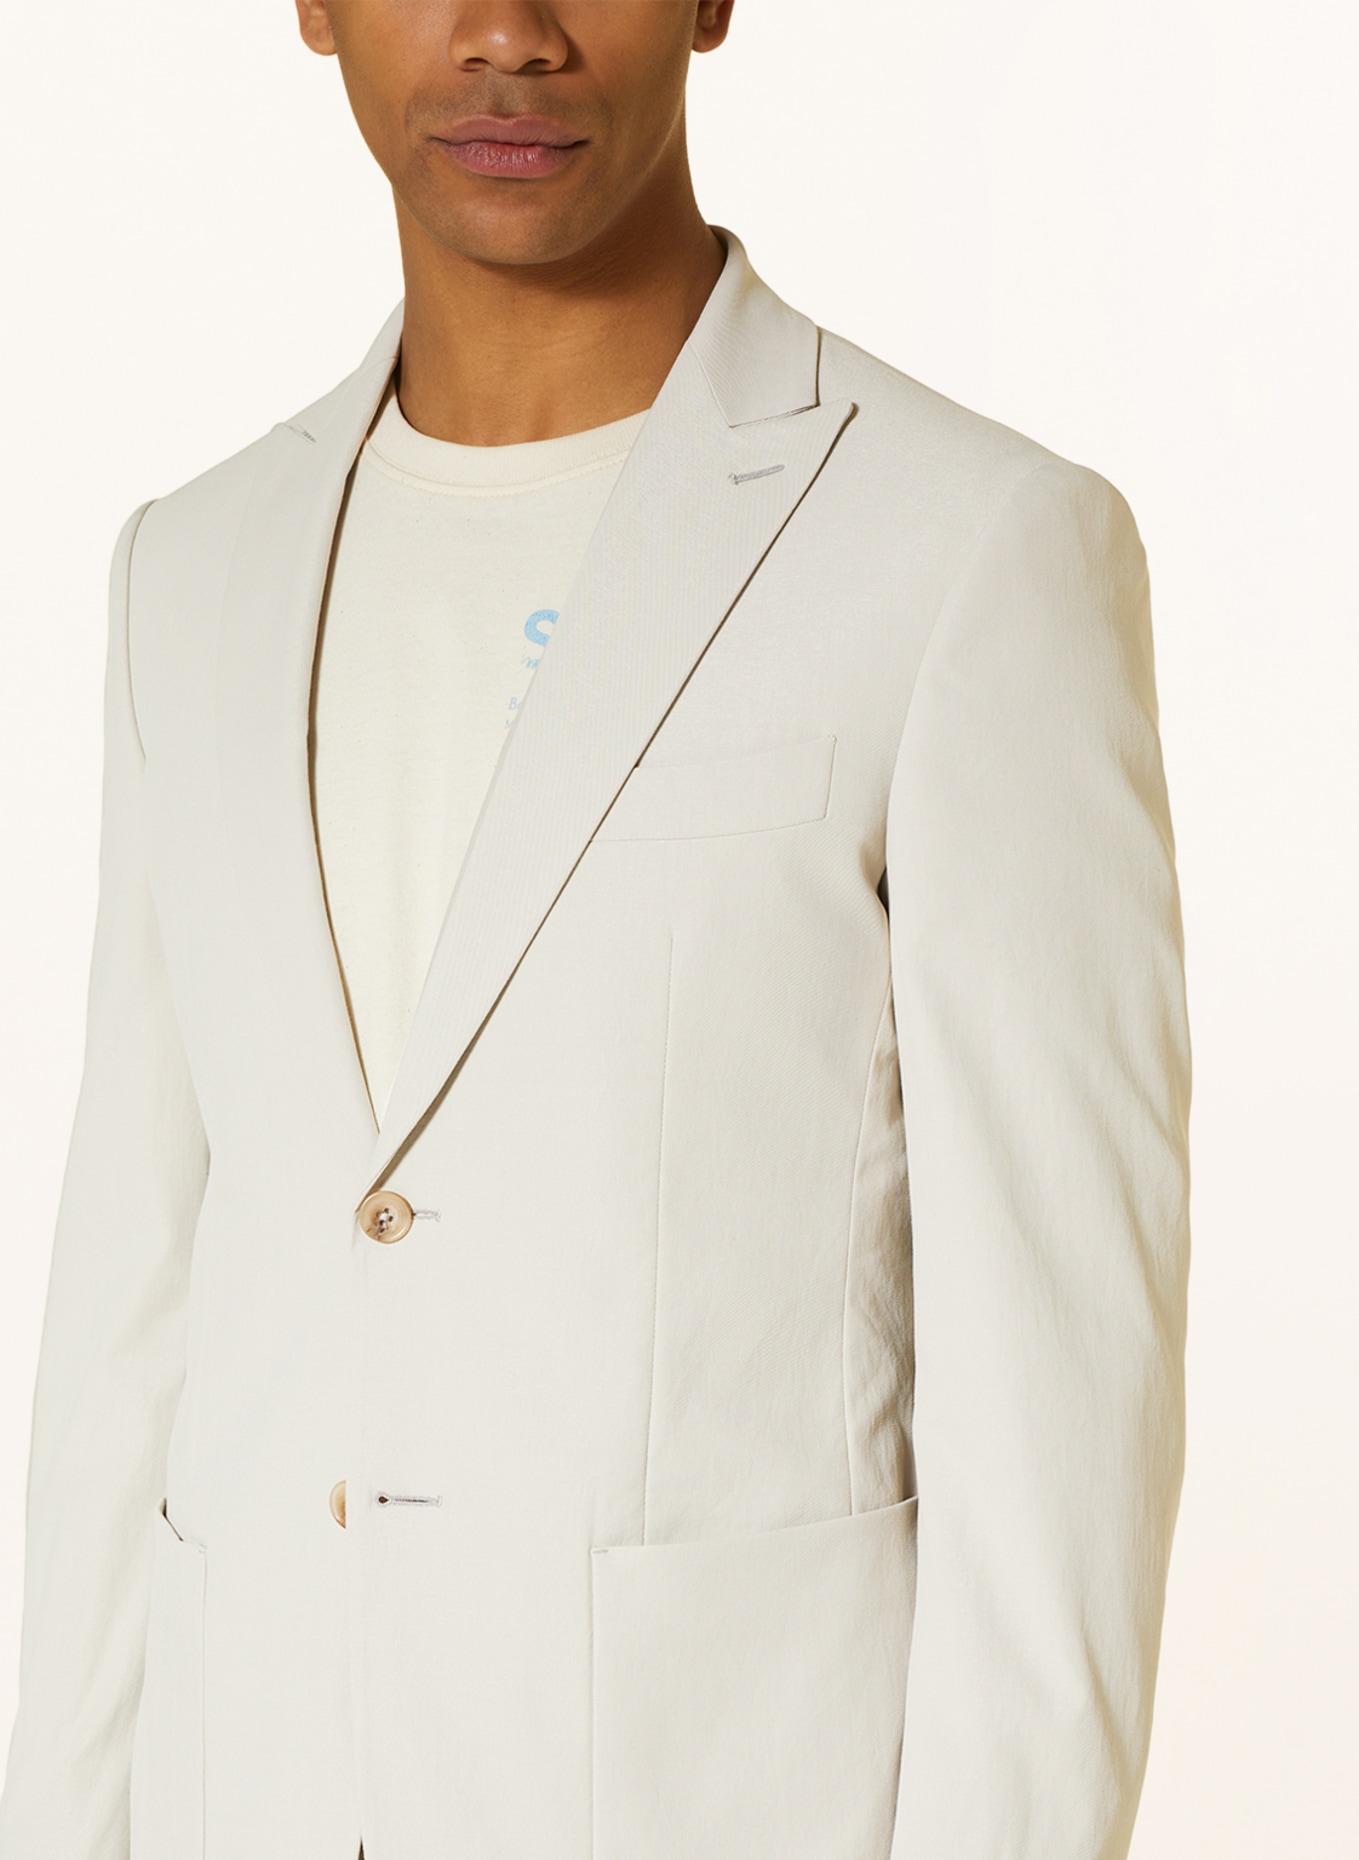 SPSR Suit jacket extra slim fit, Color: BEIGE (Image 5)